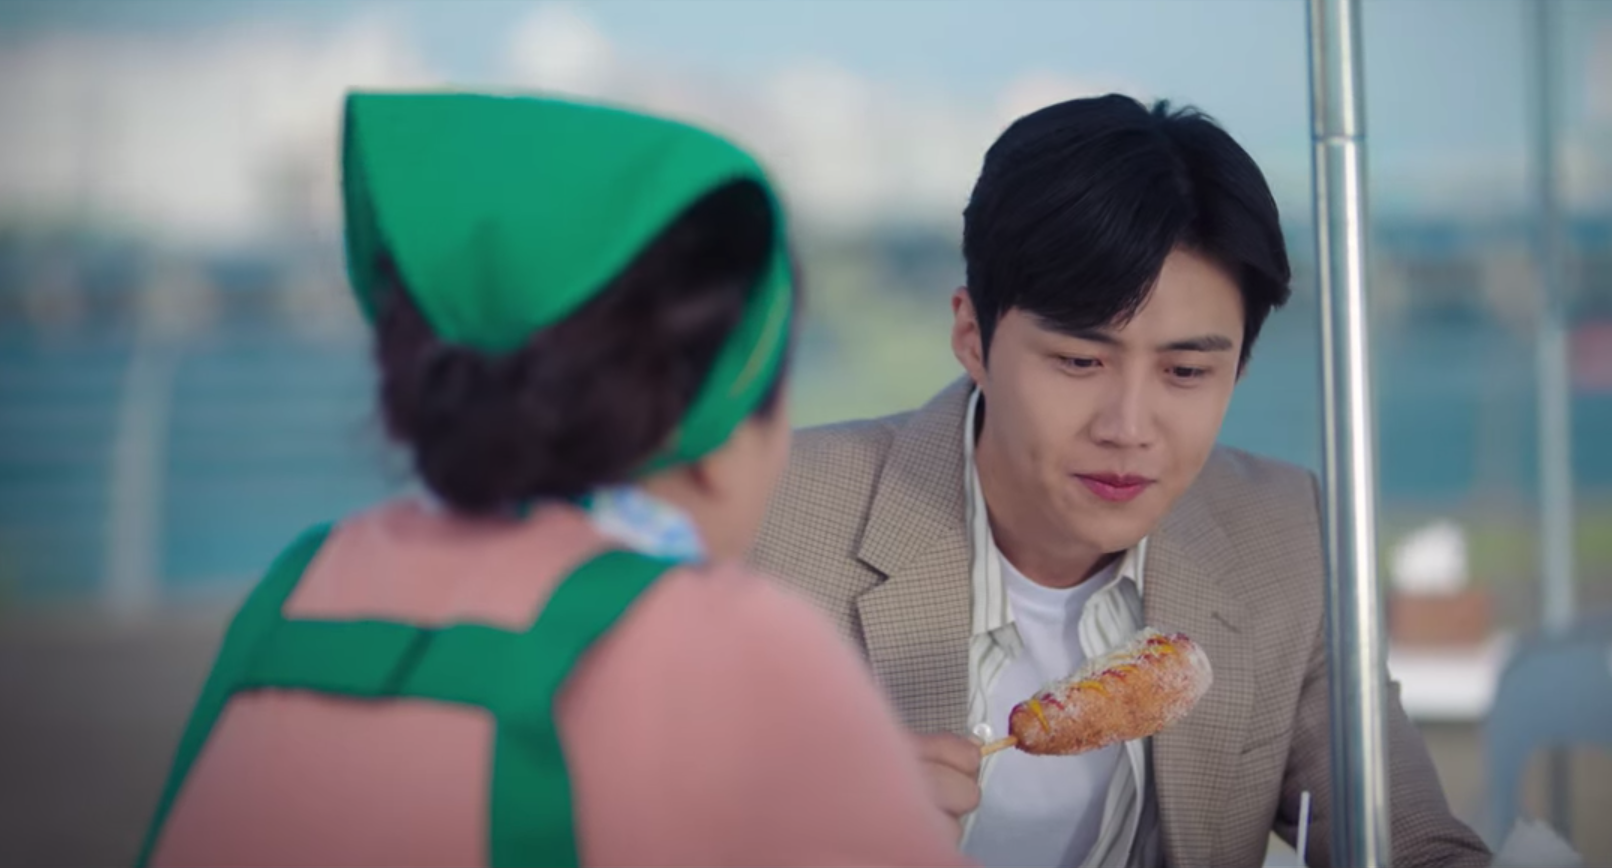 한집 영 김선호가 스타트 업에서 콘도 그를 먹는다.  사진 : Netflix